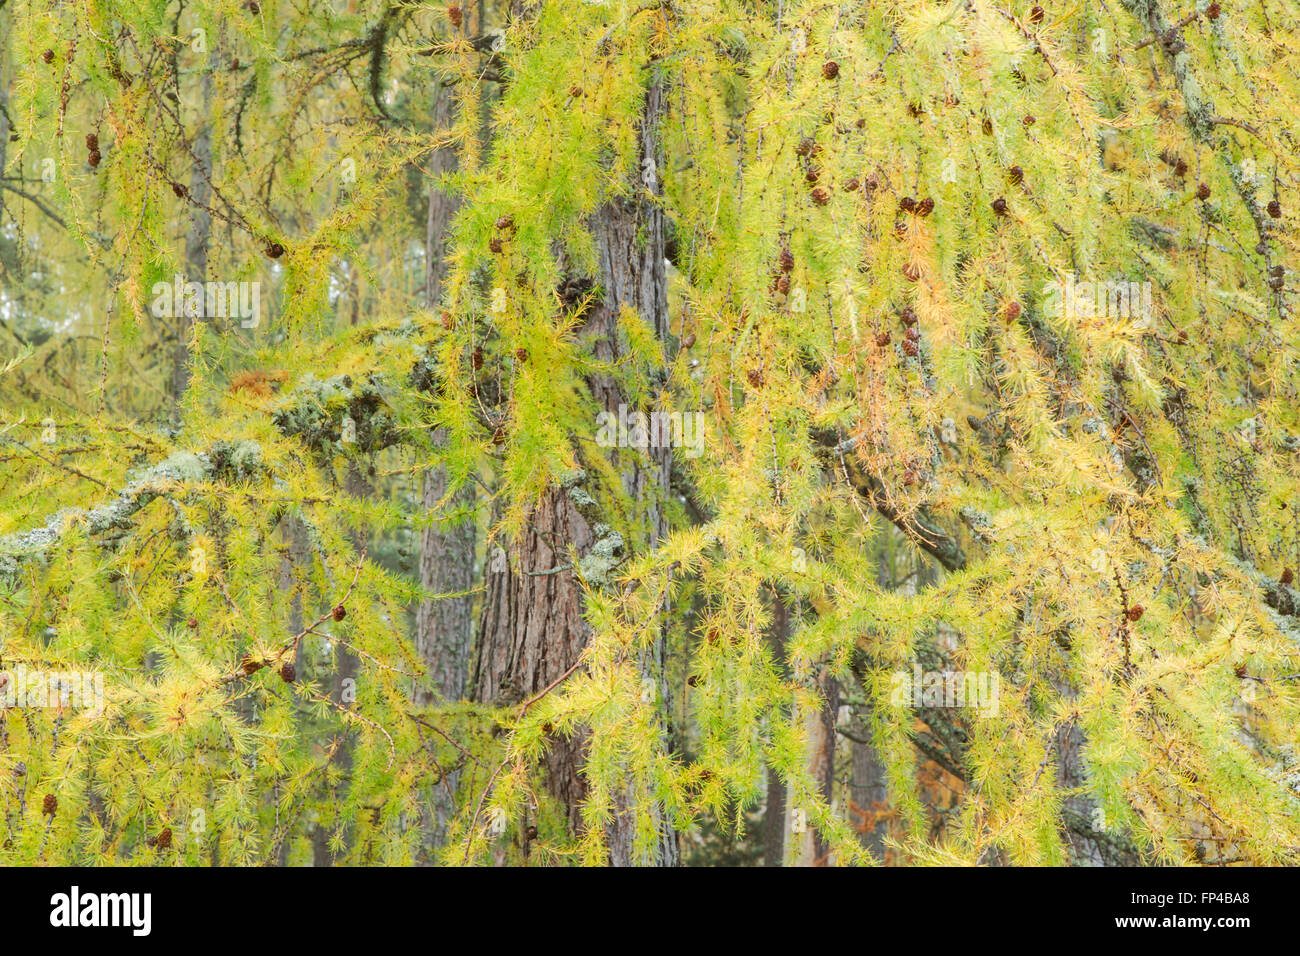 Europäische Lärche Baum, lateinischer Name Larix Decidua, zeigt Nadel geformte Blätter und braune Zapfen Stockfoto